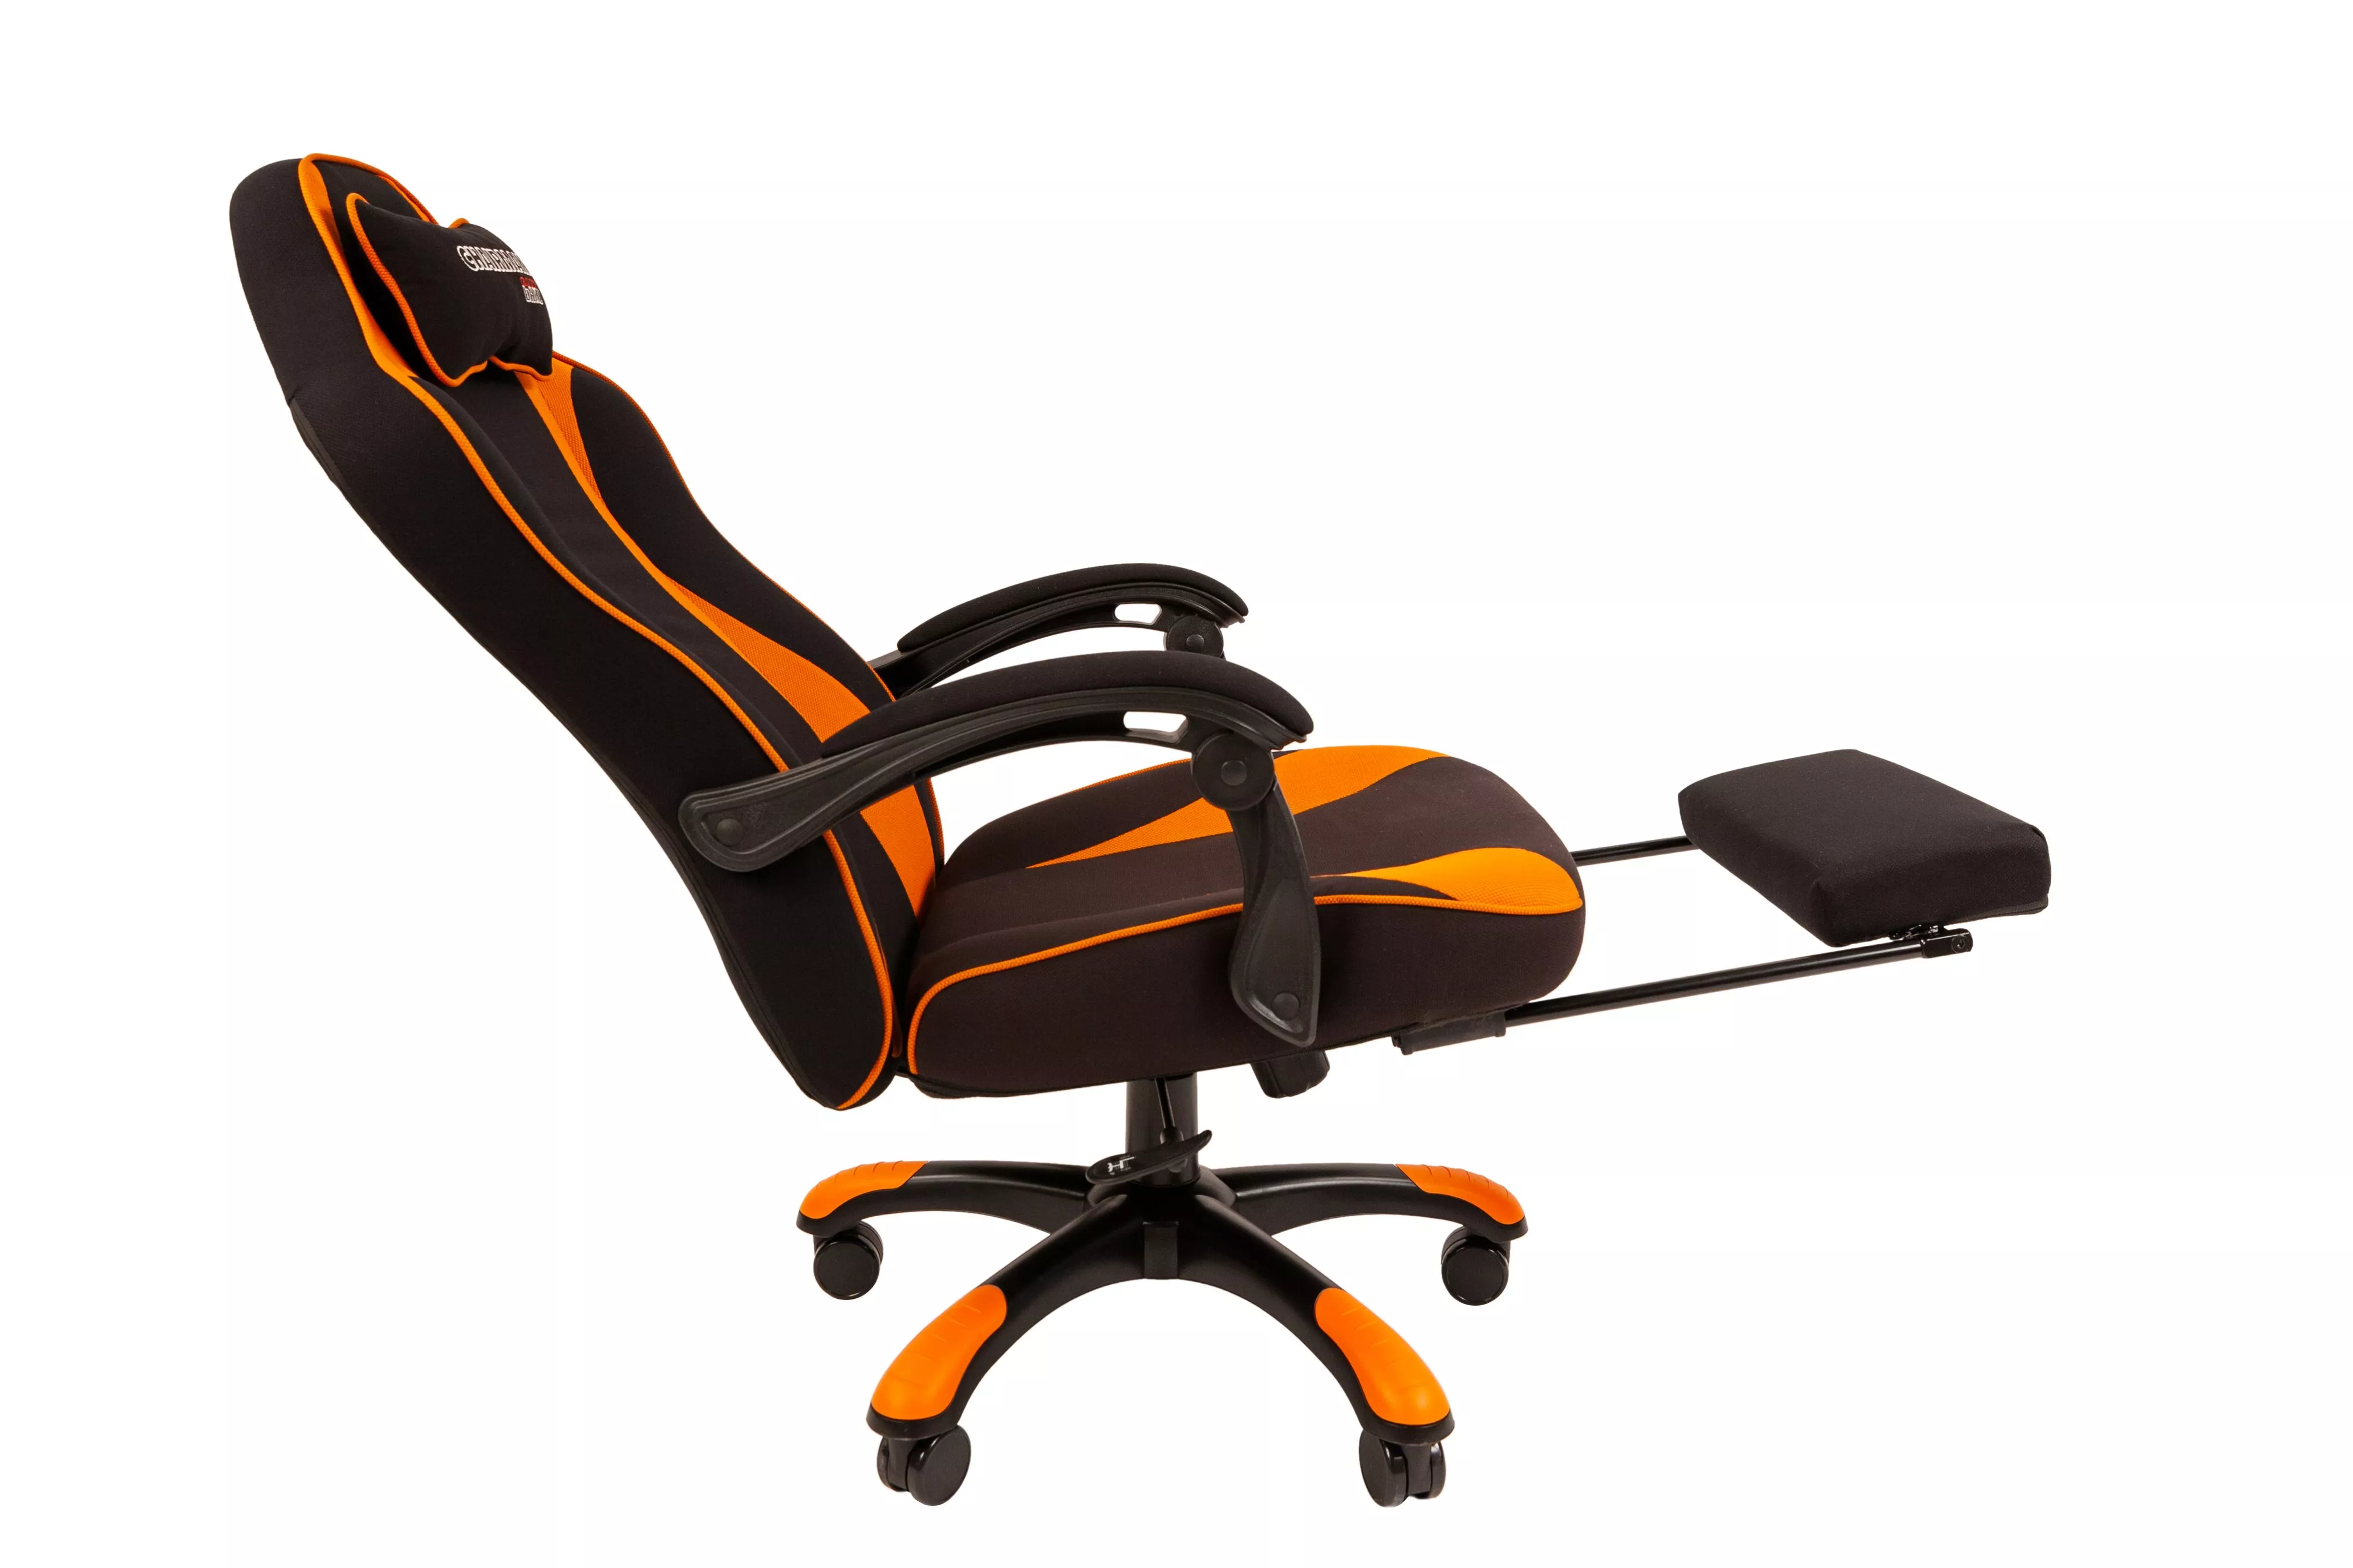 Геймерское кресло Chairman GAME 35 черный / оранжевый